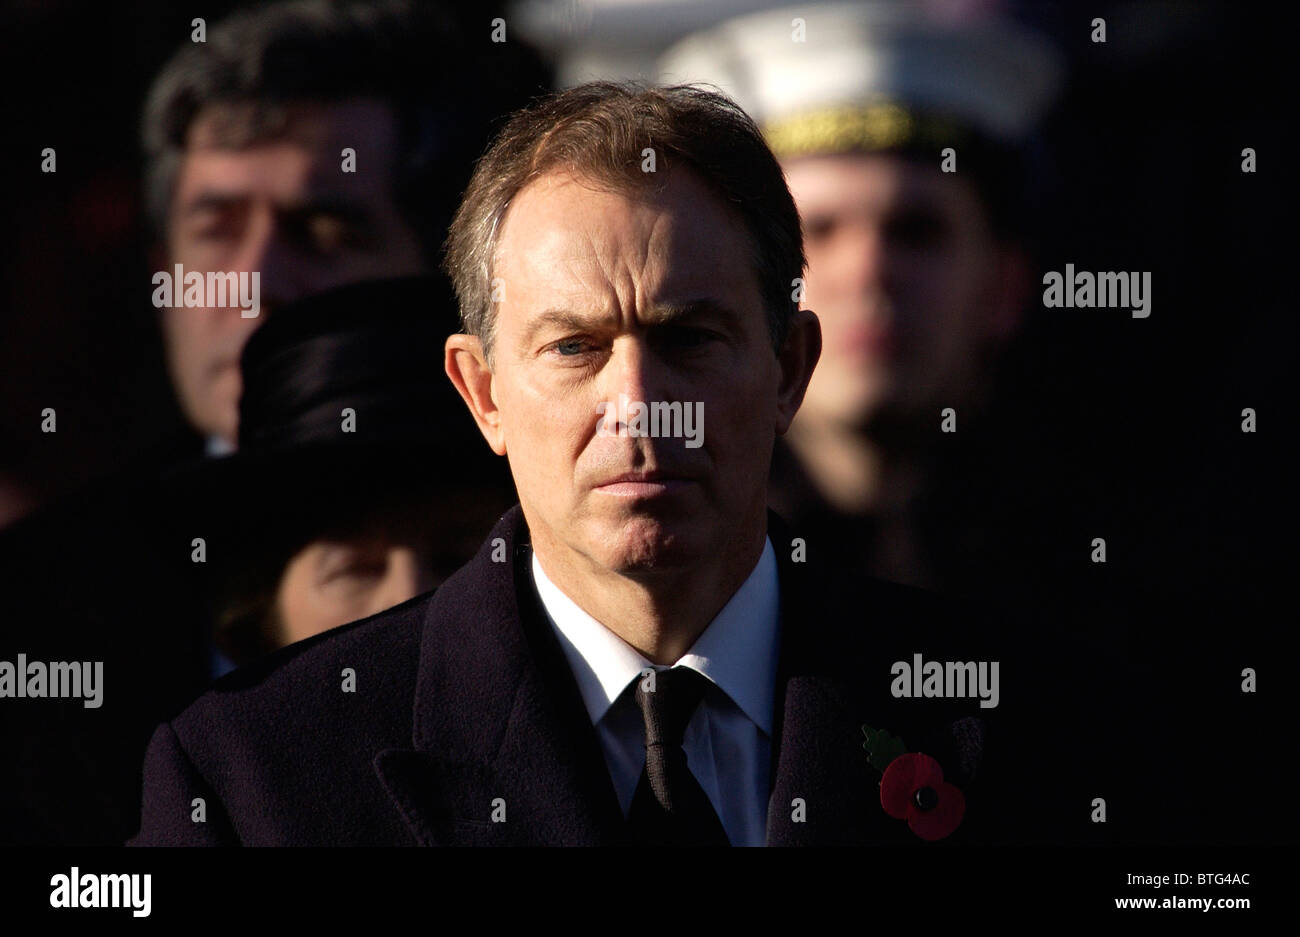 Premierminister Tony Blair Krawatte schwarz für Trauer an der Gedenkveranstaltung, Kenotaph, London Stockfoto